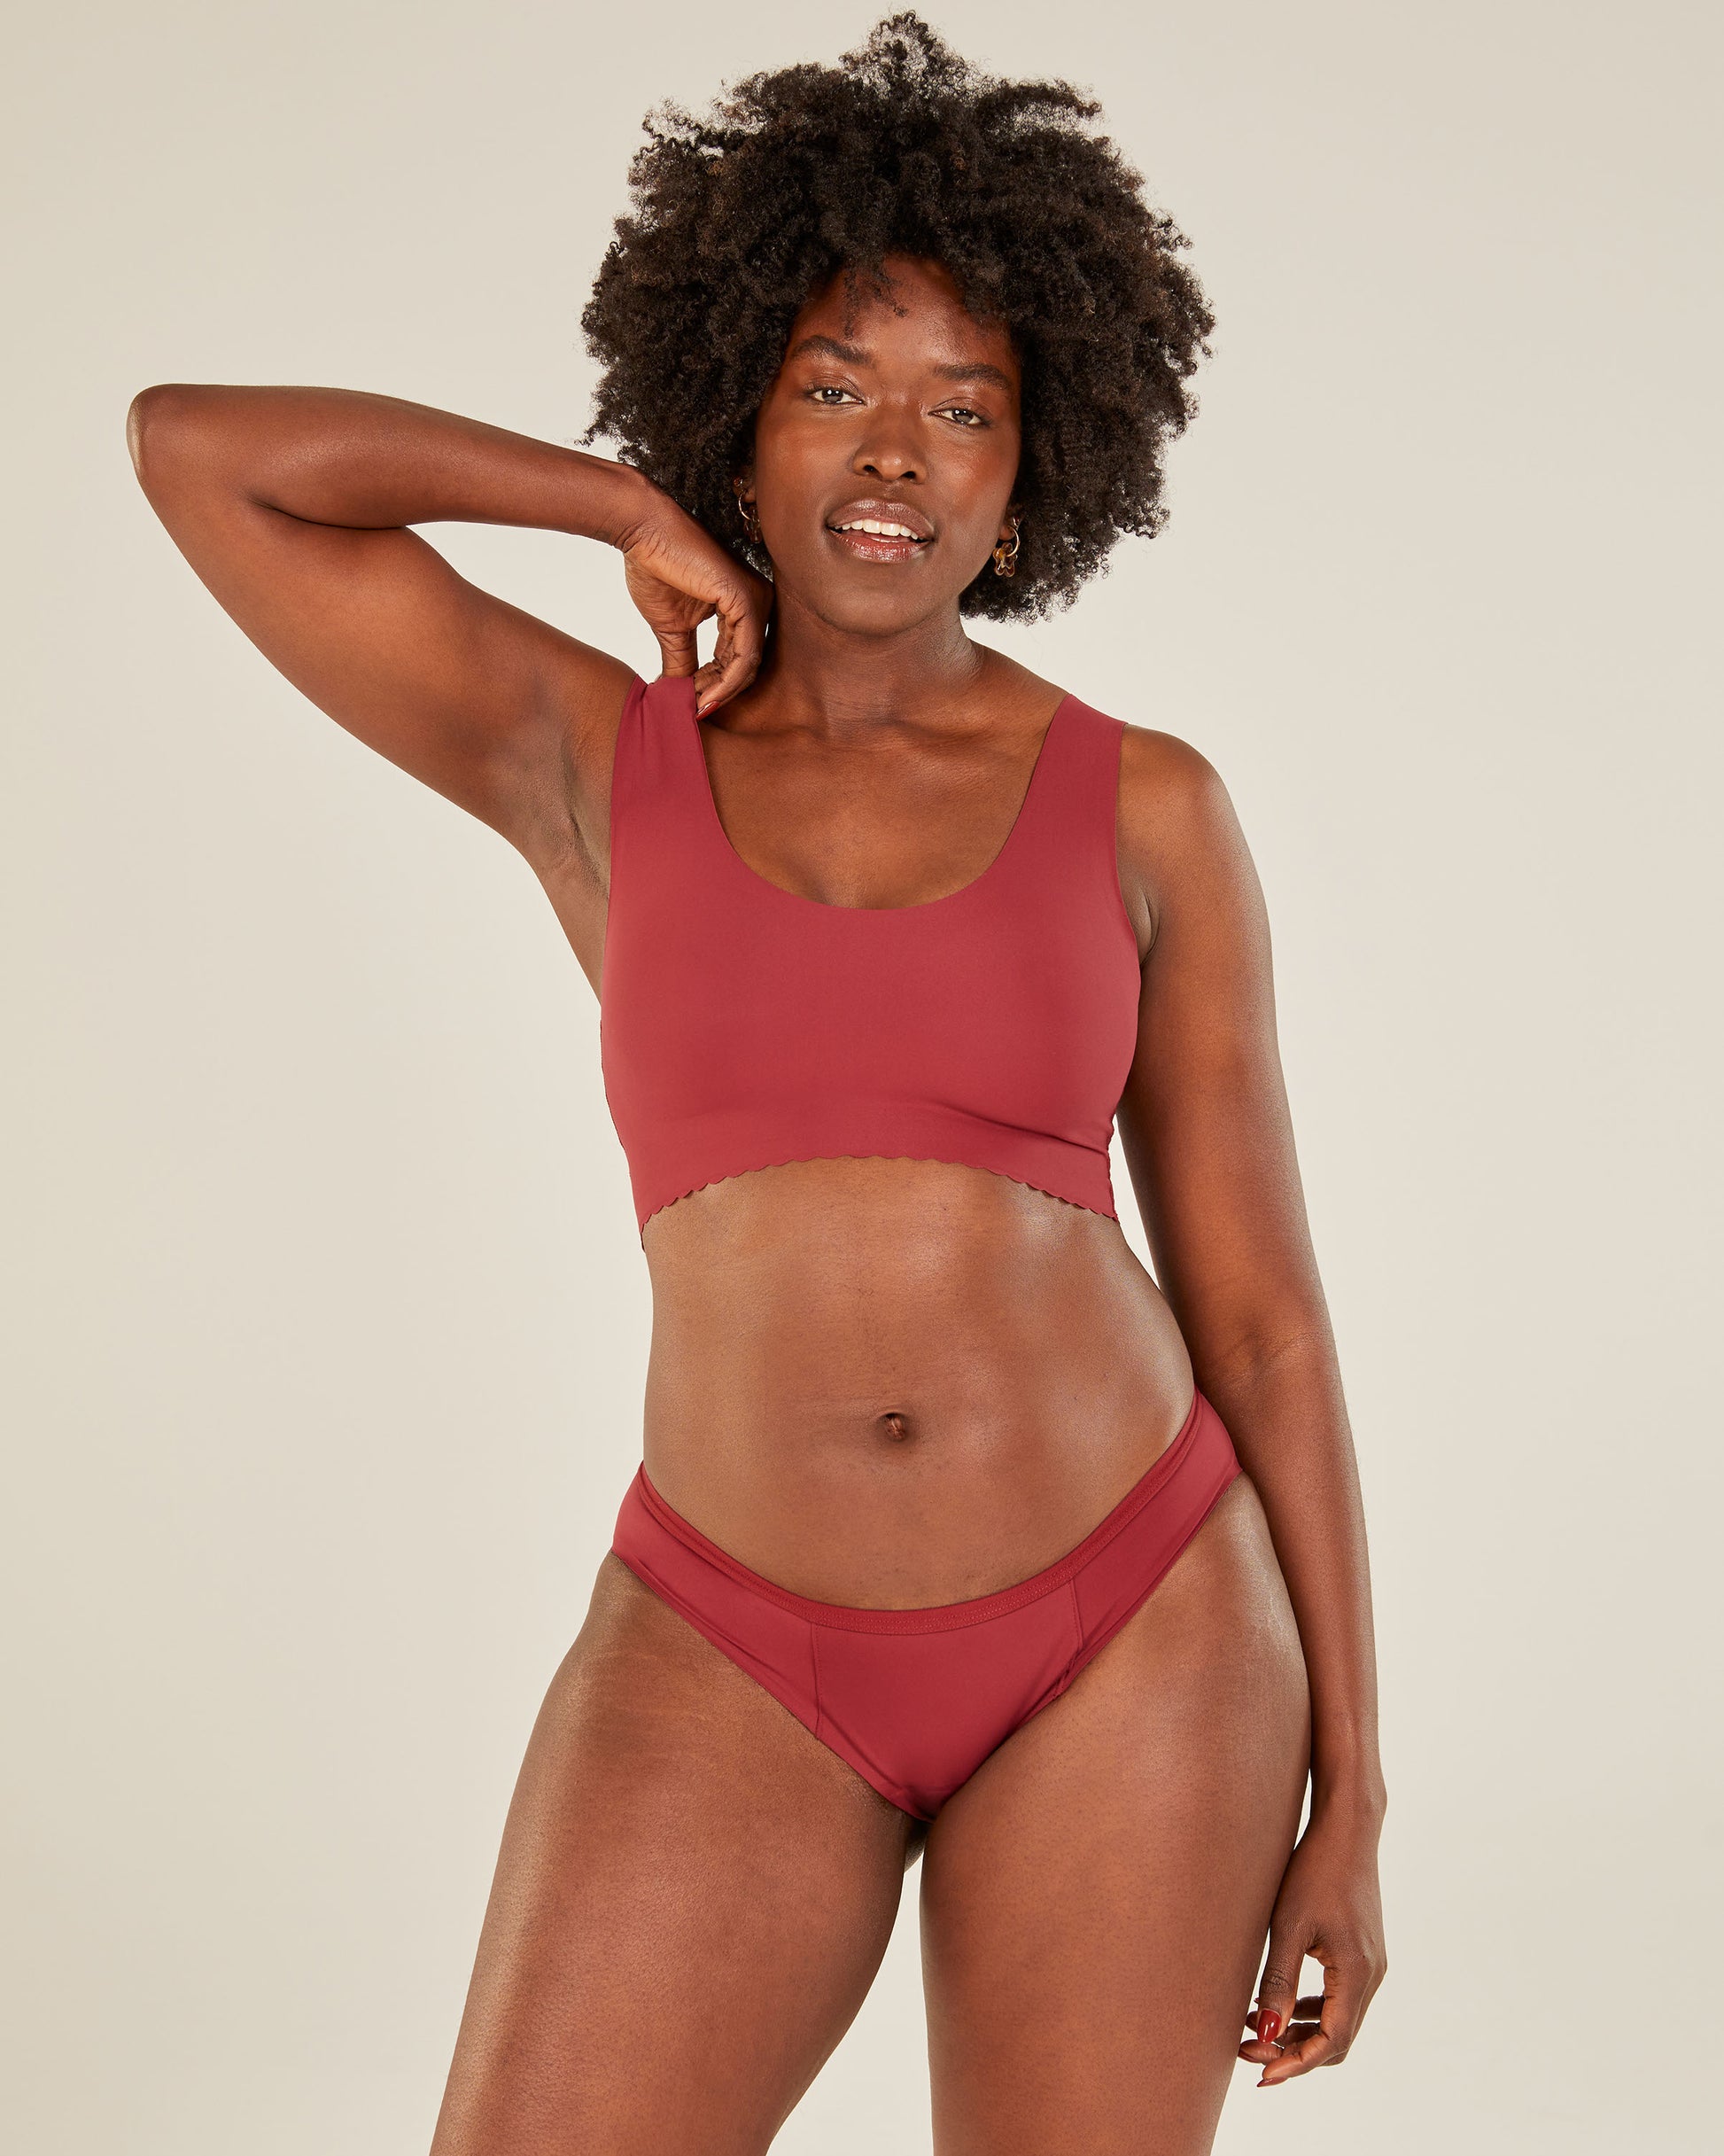  LEAKPROOF2.0 Sport Bikini Period Underwear for Women